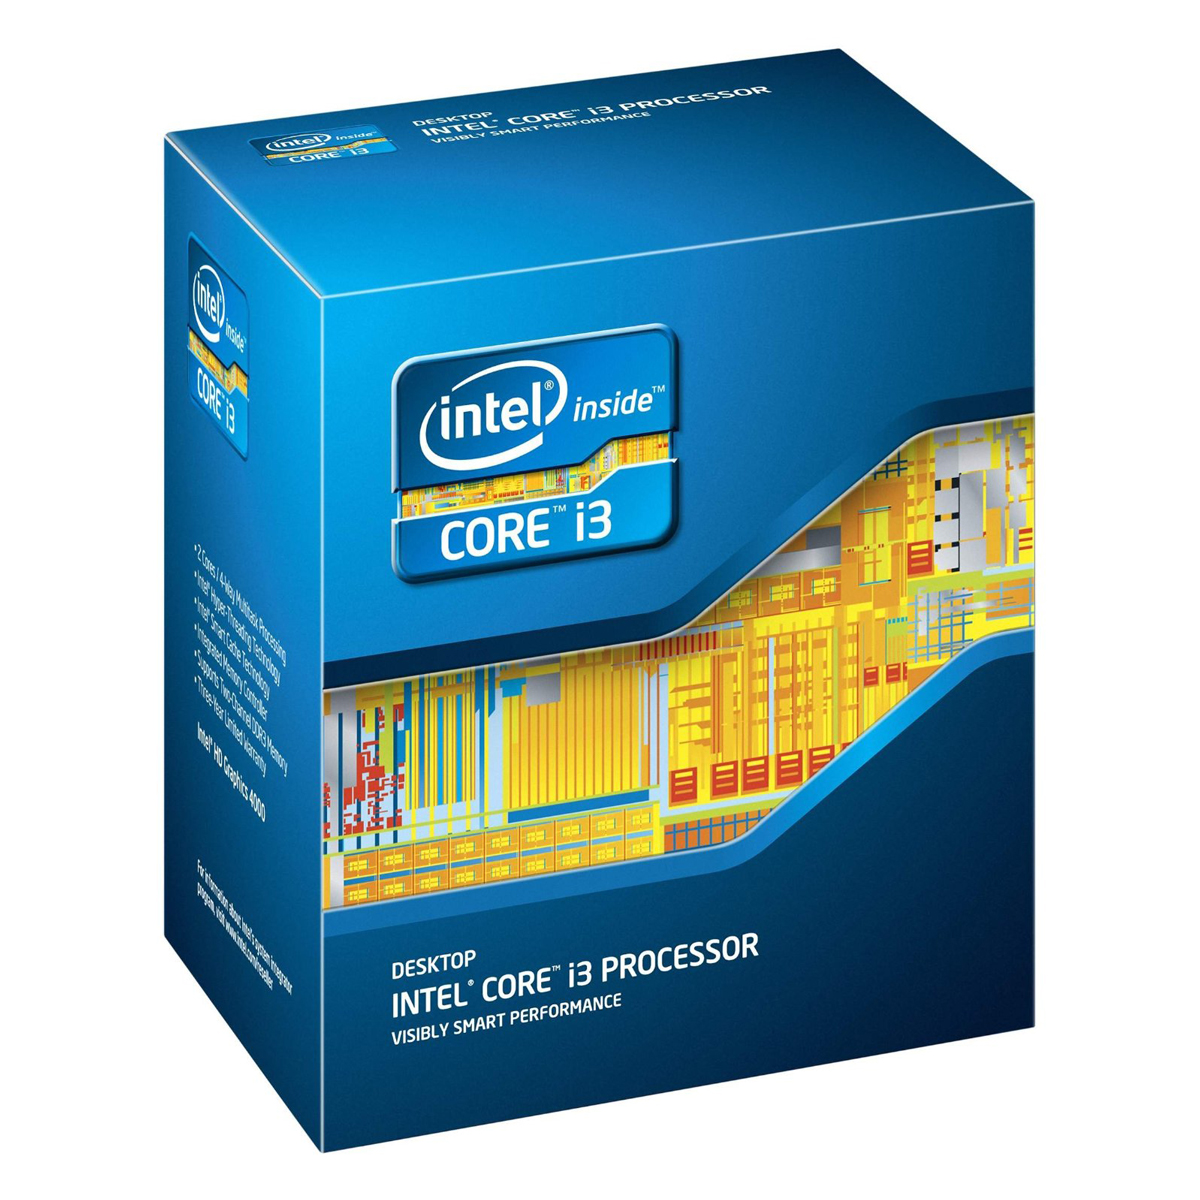 Bộ Vi Xử Lý Intel Core i3-3220 3.3GHz  - Hàng Nhập Khẩu